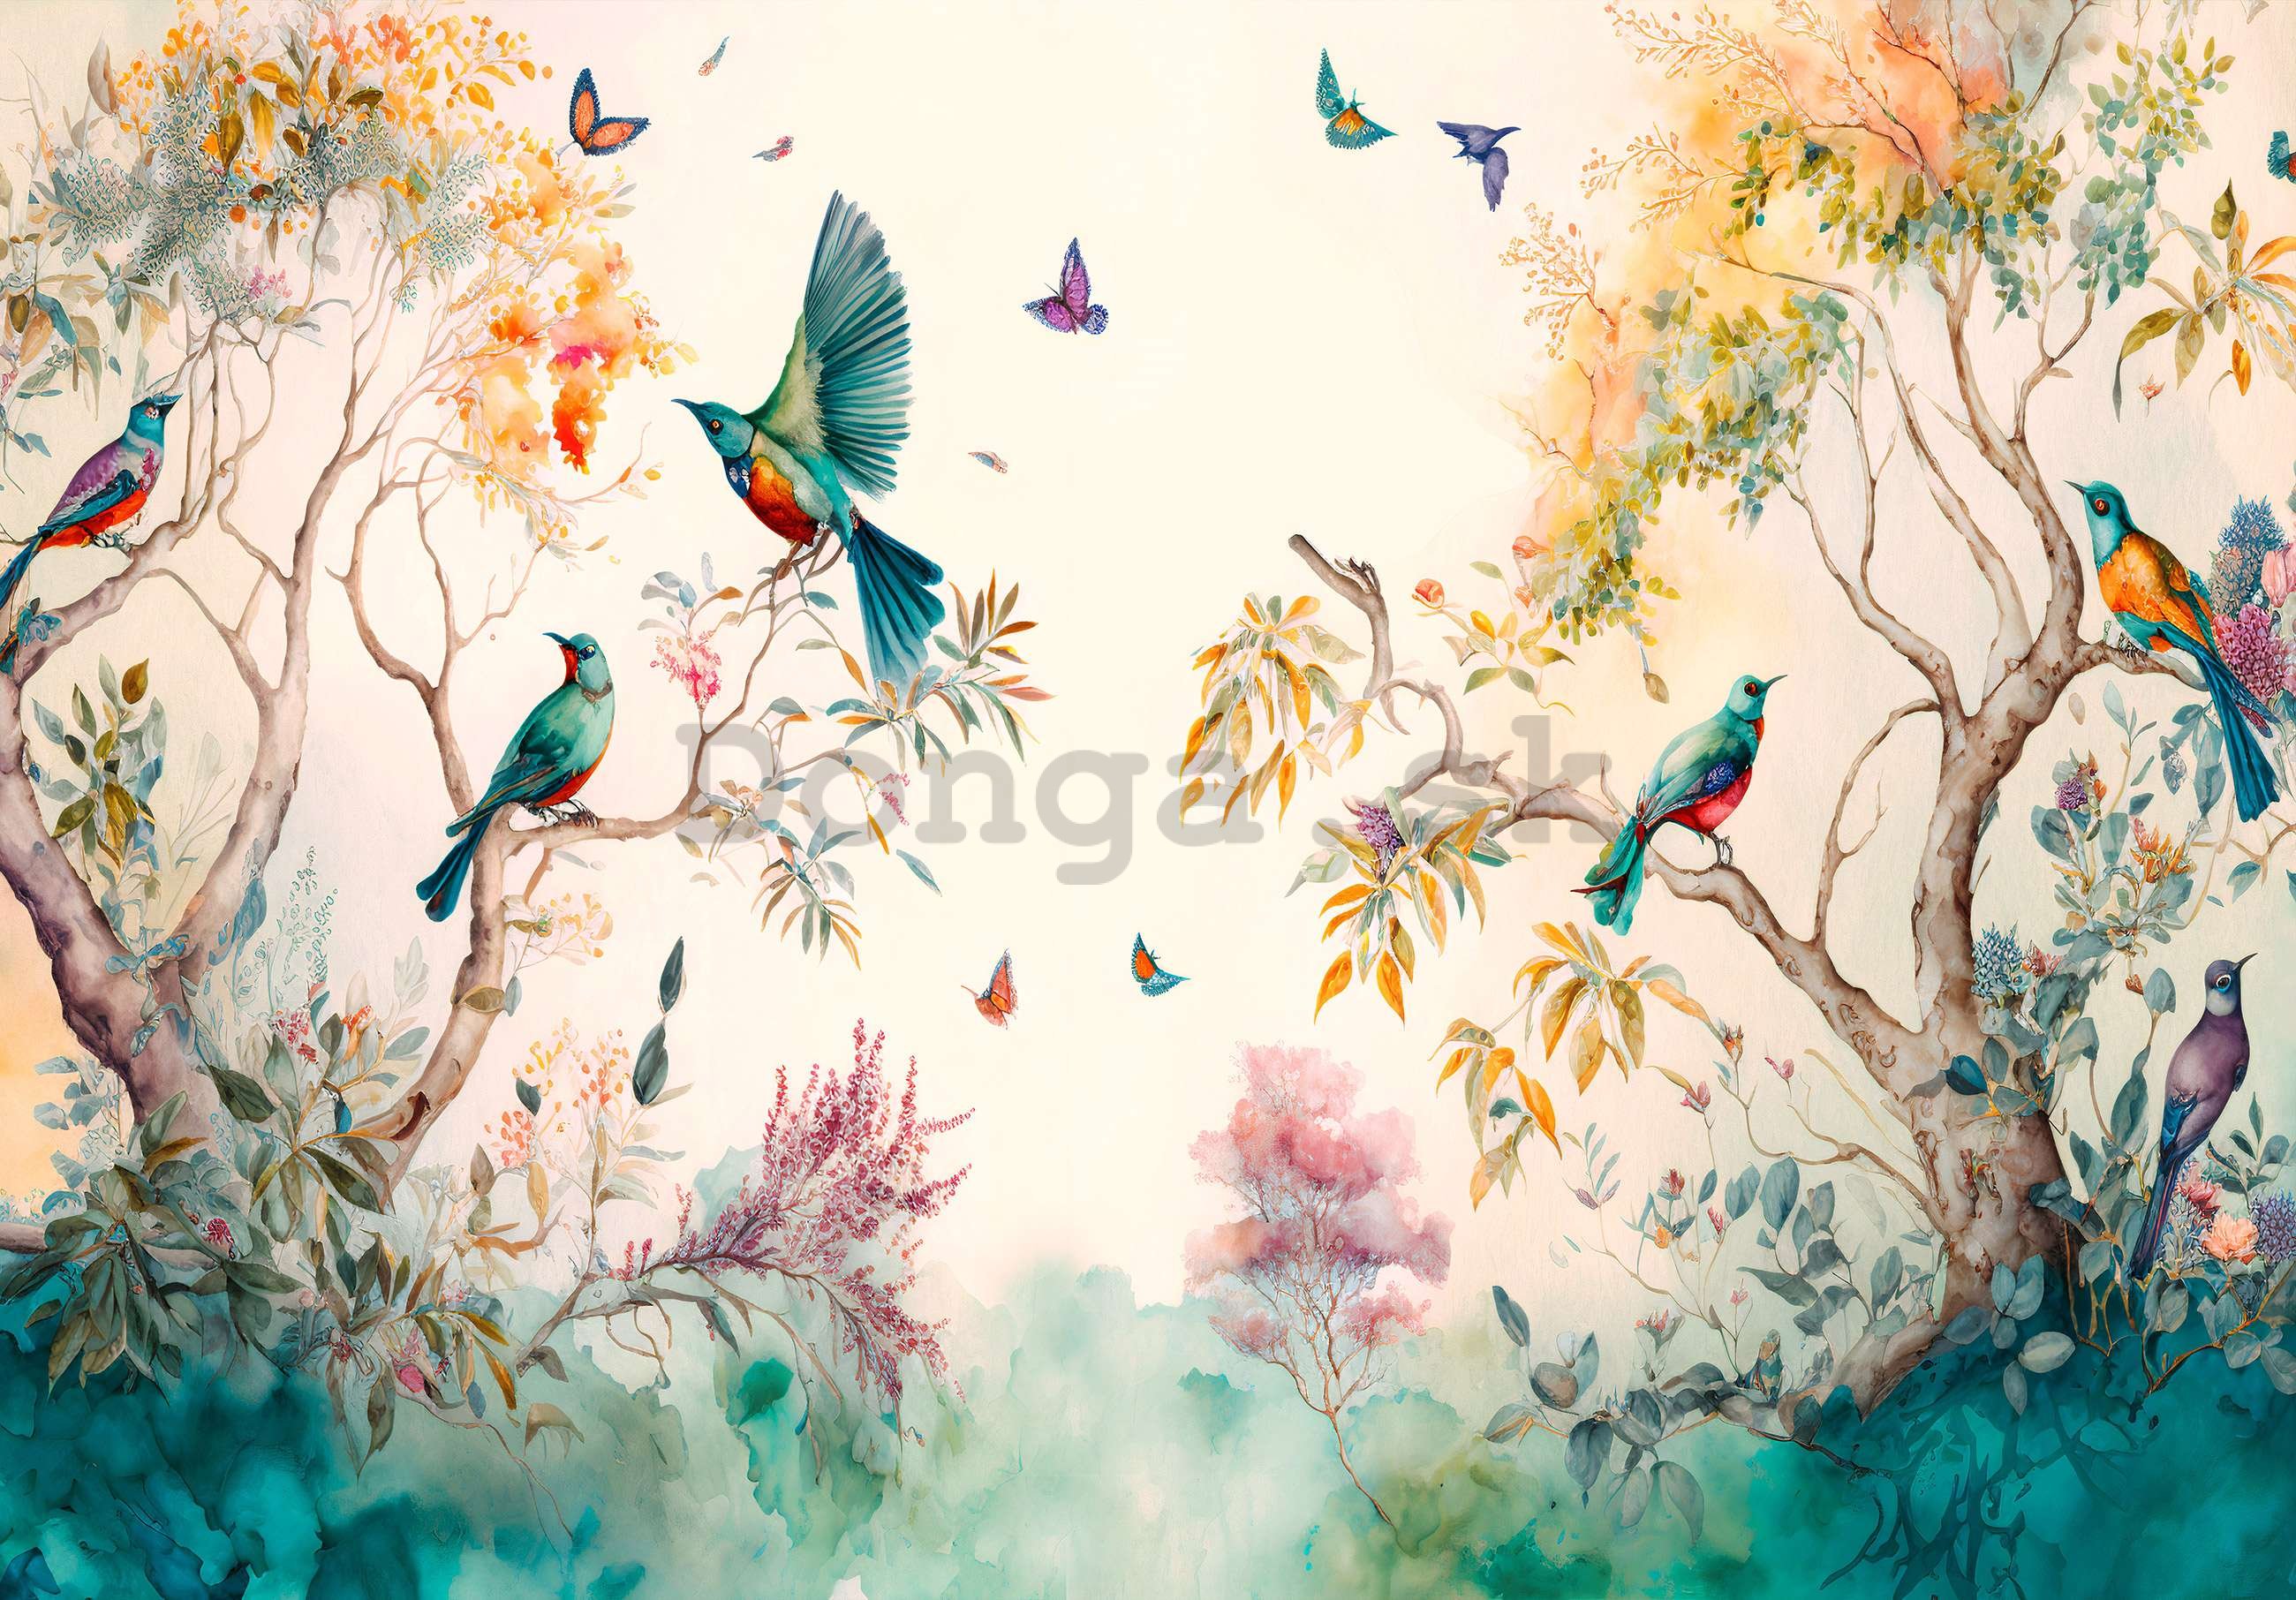 Fototapeta vliesová: Ptáci na stromech (malované) - 416x254 cm